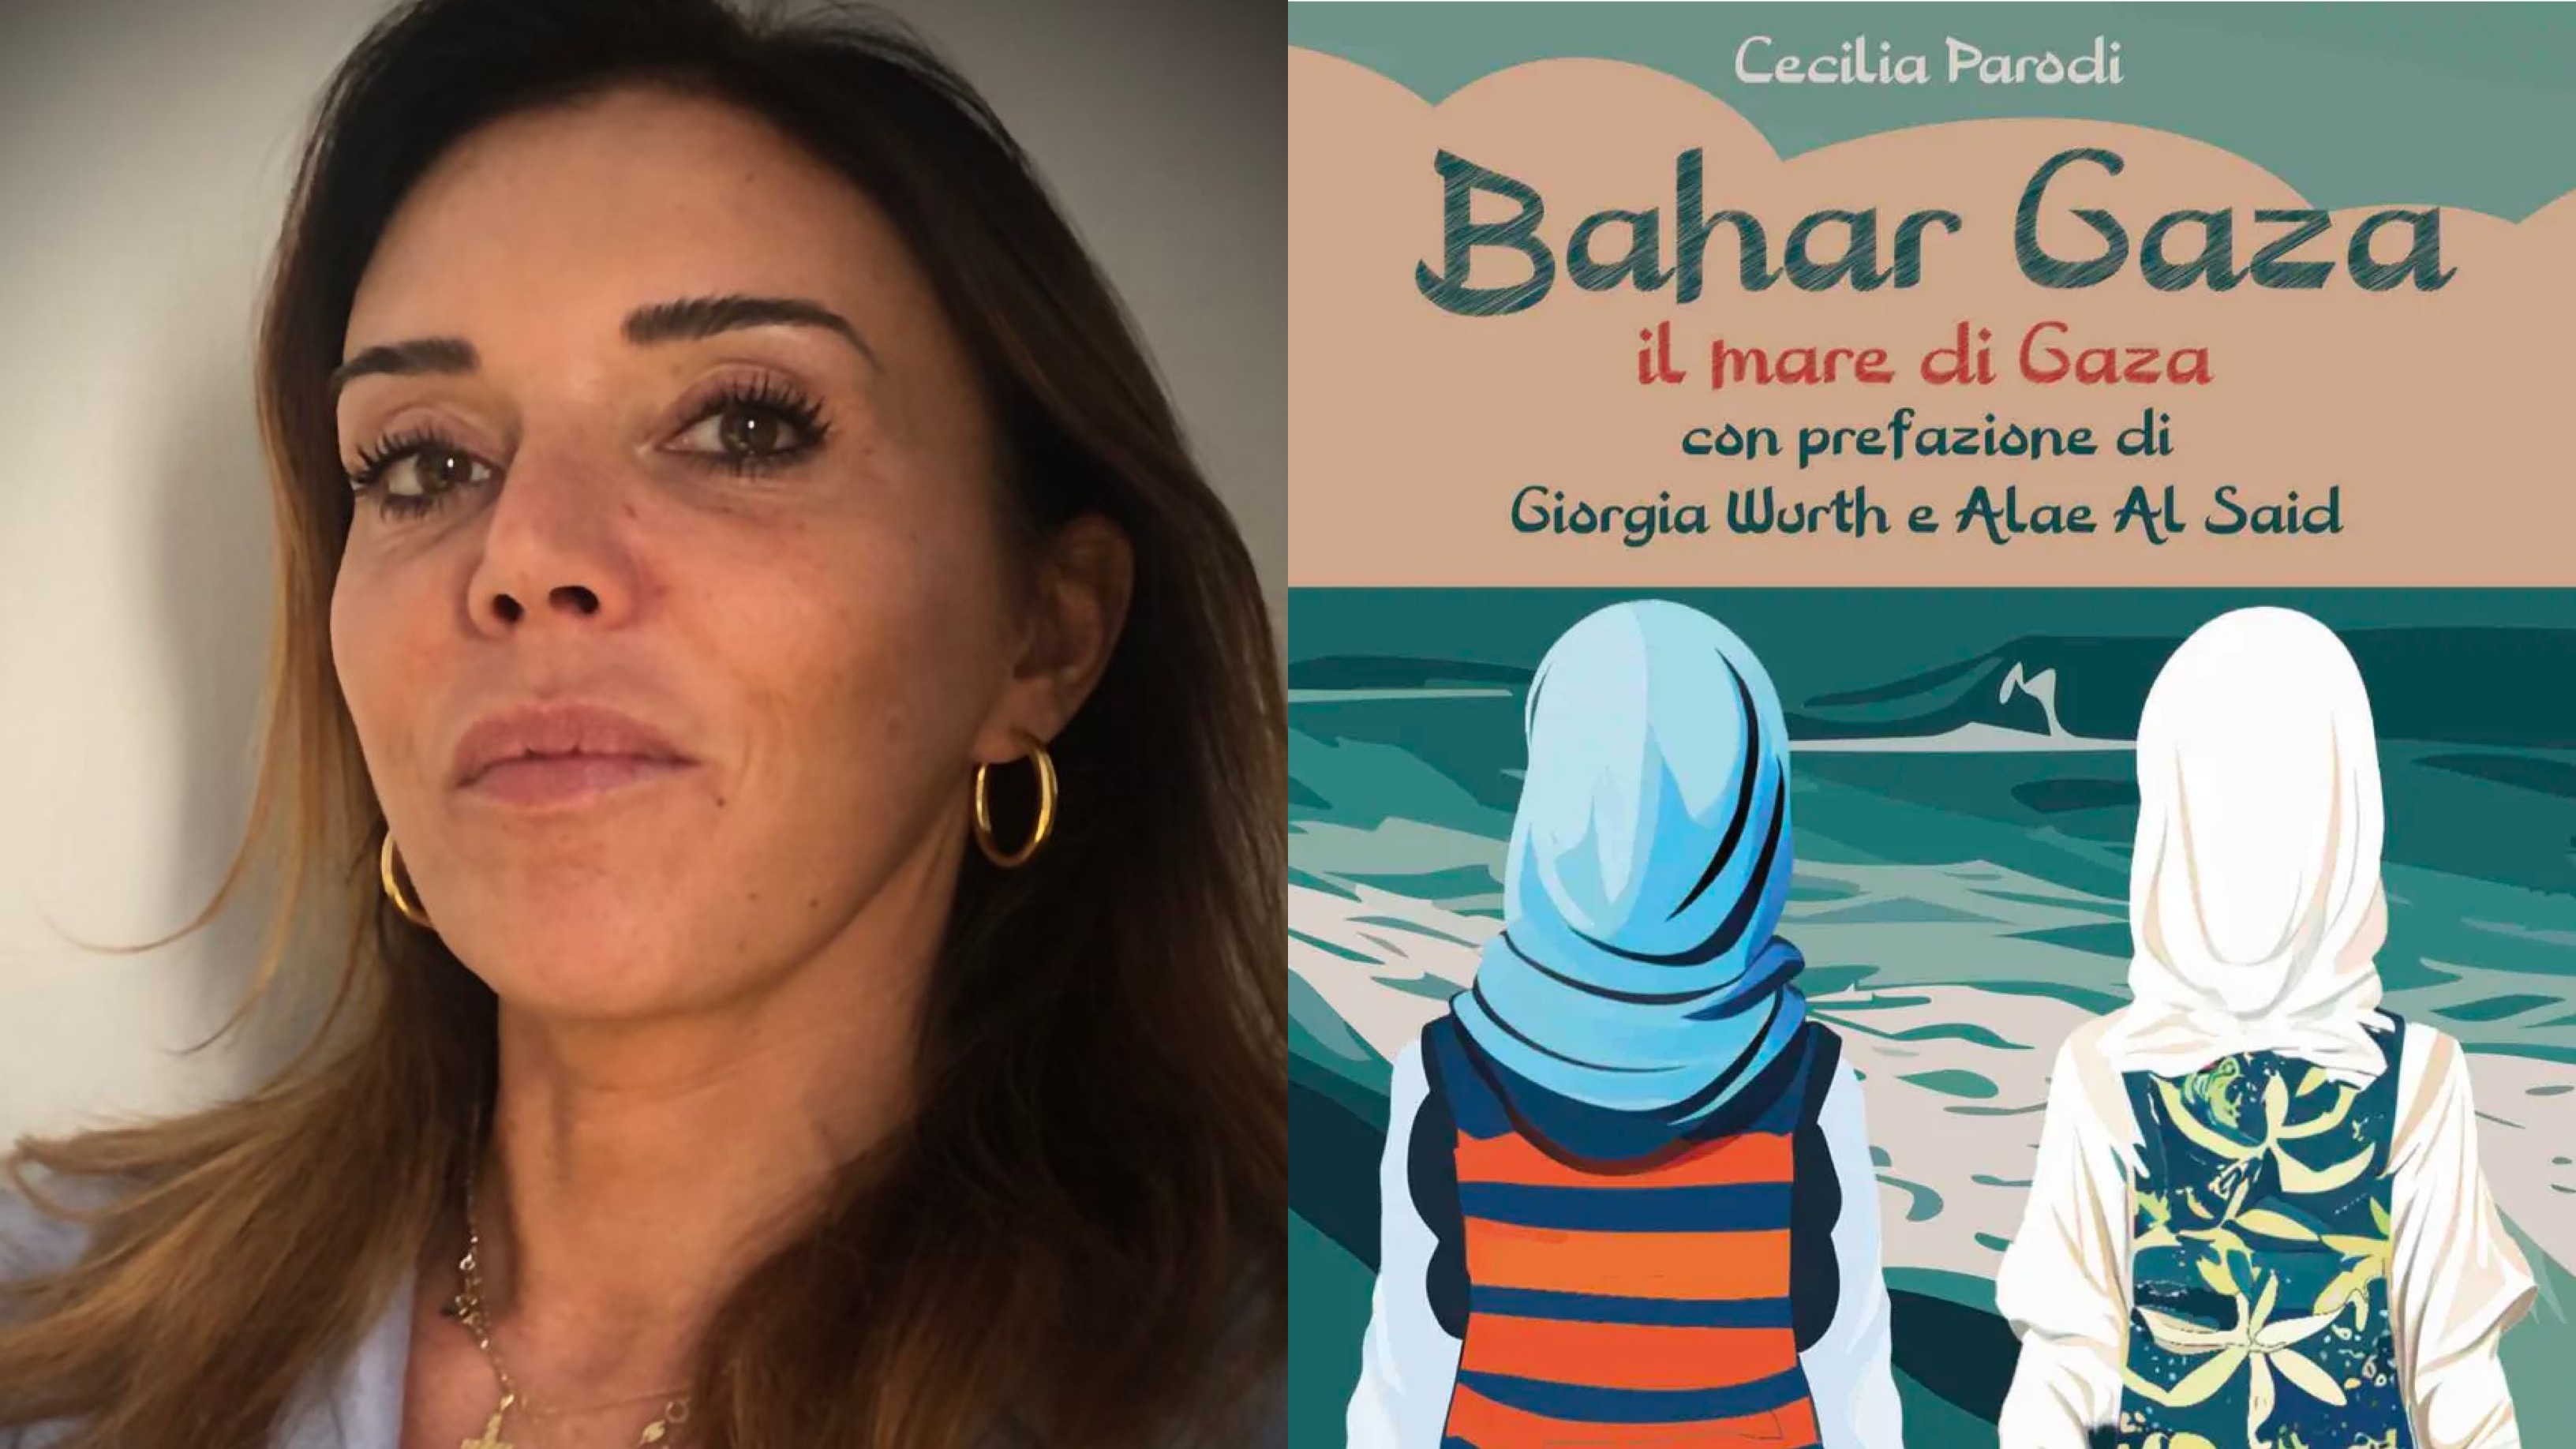 Olbia, ecco Bahar Gaza, l'ultimo libro dell'attivista Cecilia Parodi